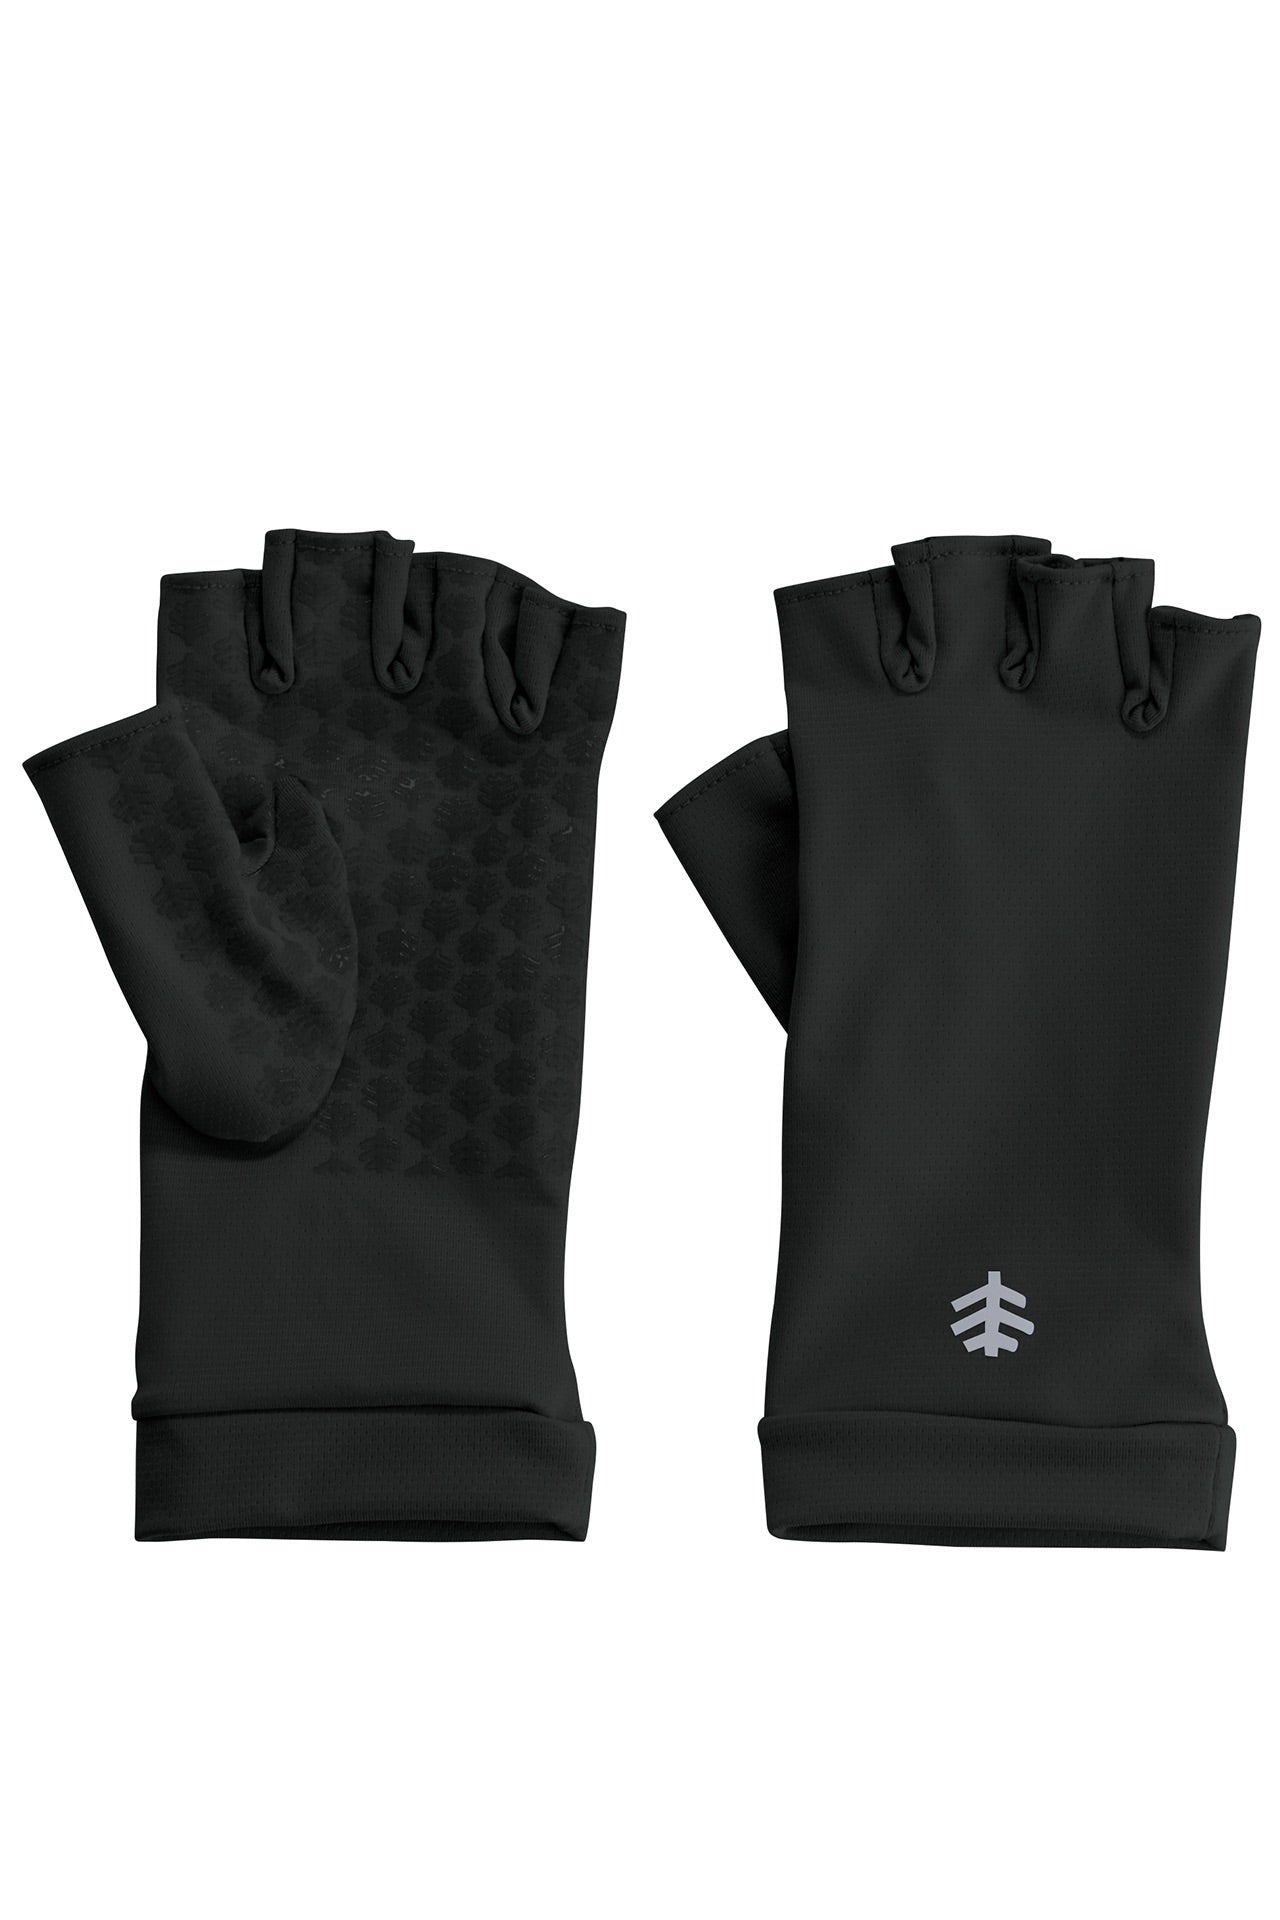 Coolibar Ouray UV Fingerless Sun Gloves UPF 50+, Black / XL